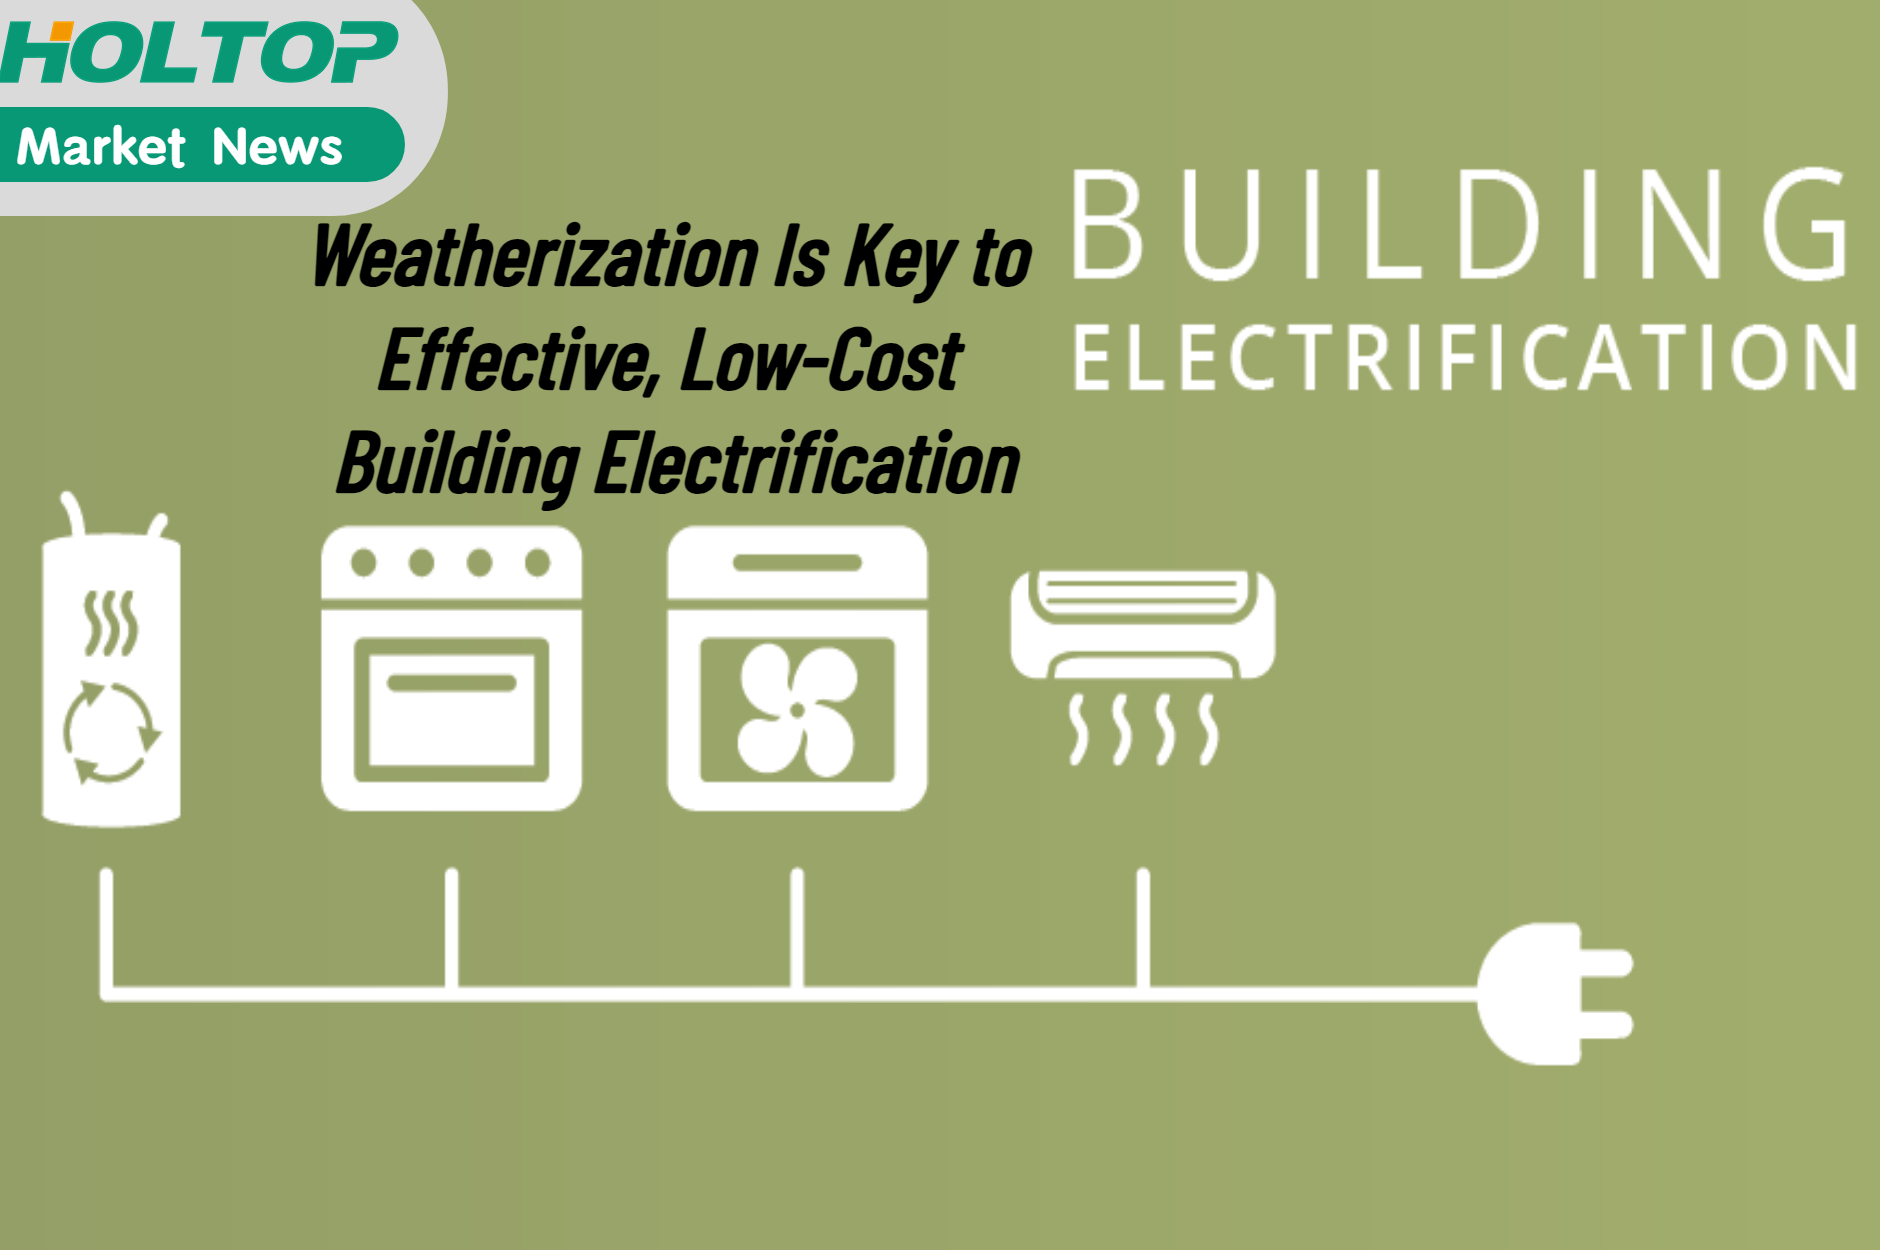 La climatización es clave para la electrificación de edificios efectiva y de bajo costo